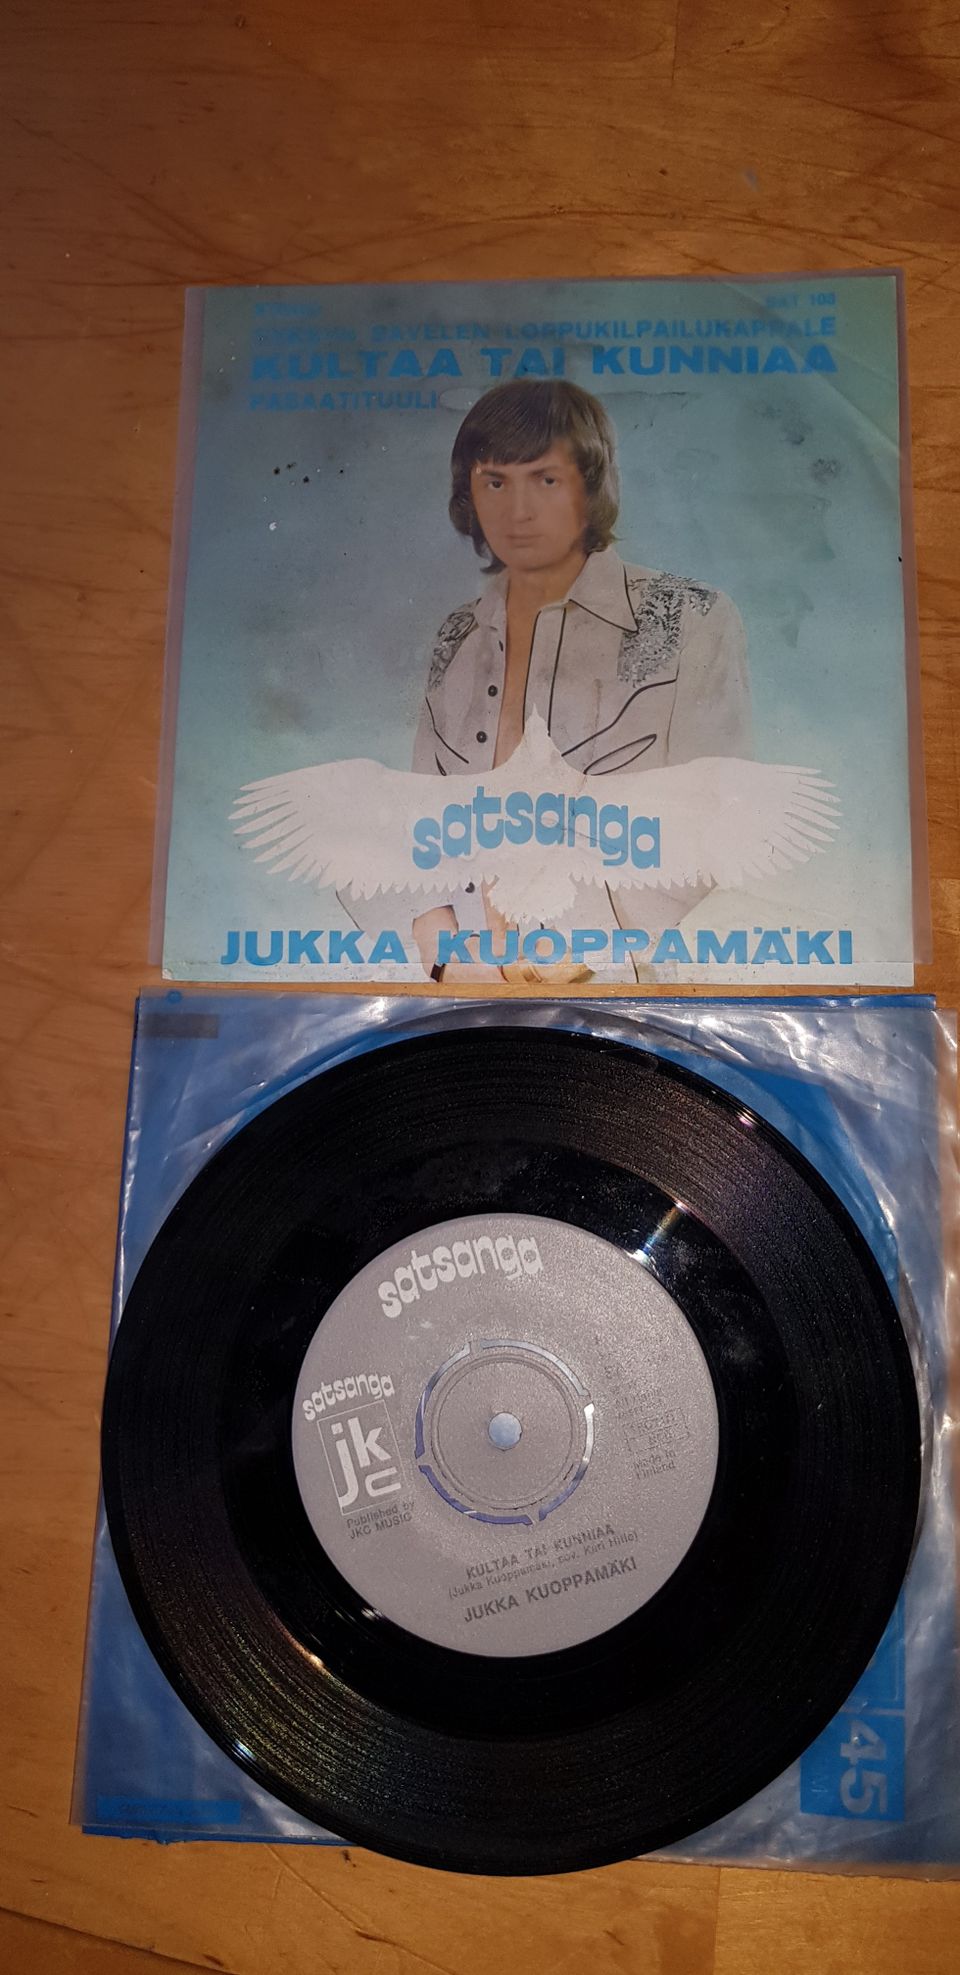 Jukka Kuoppamäki Single.